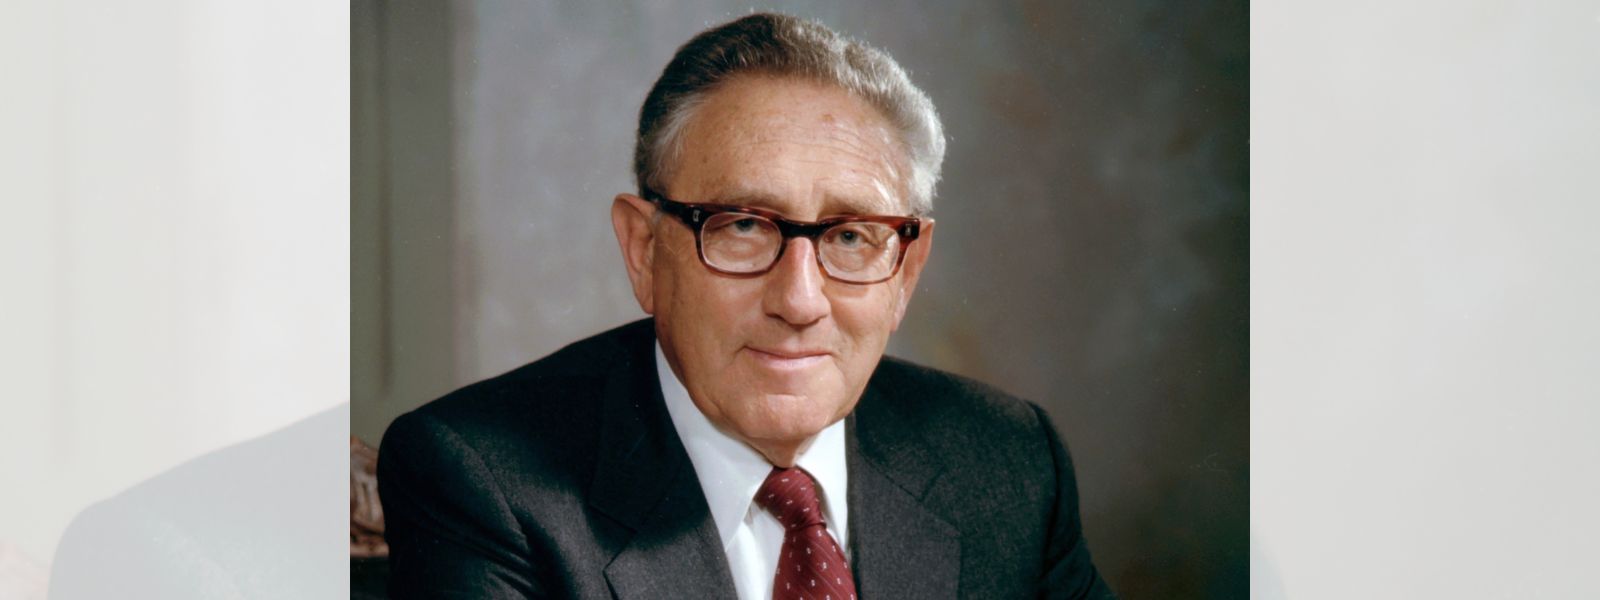 Ex-U.S. Secretary of State Henry Kissinger dies